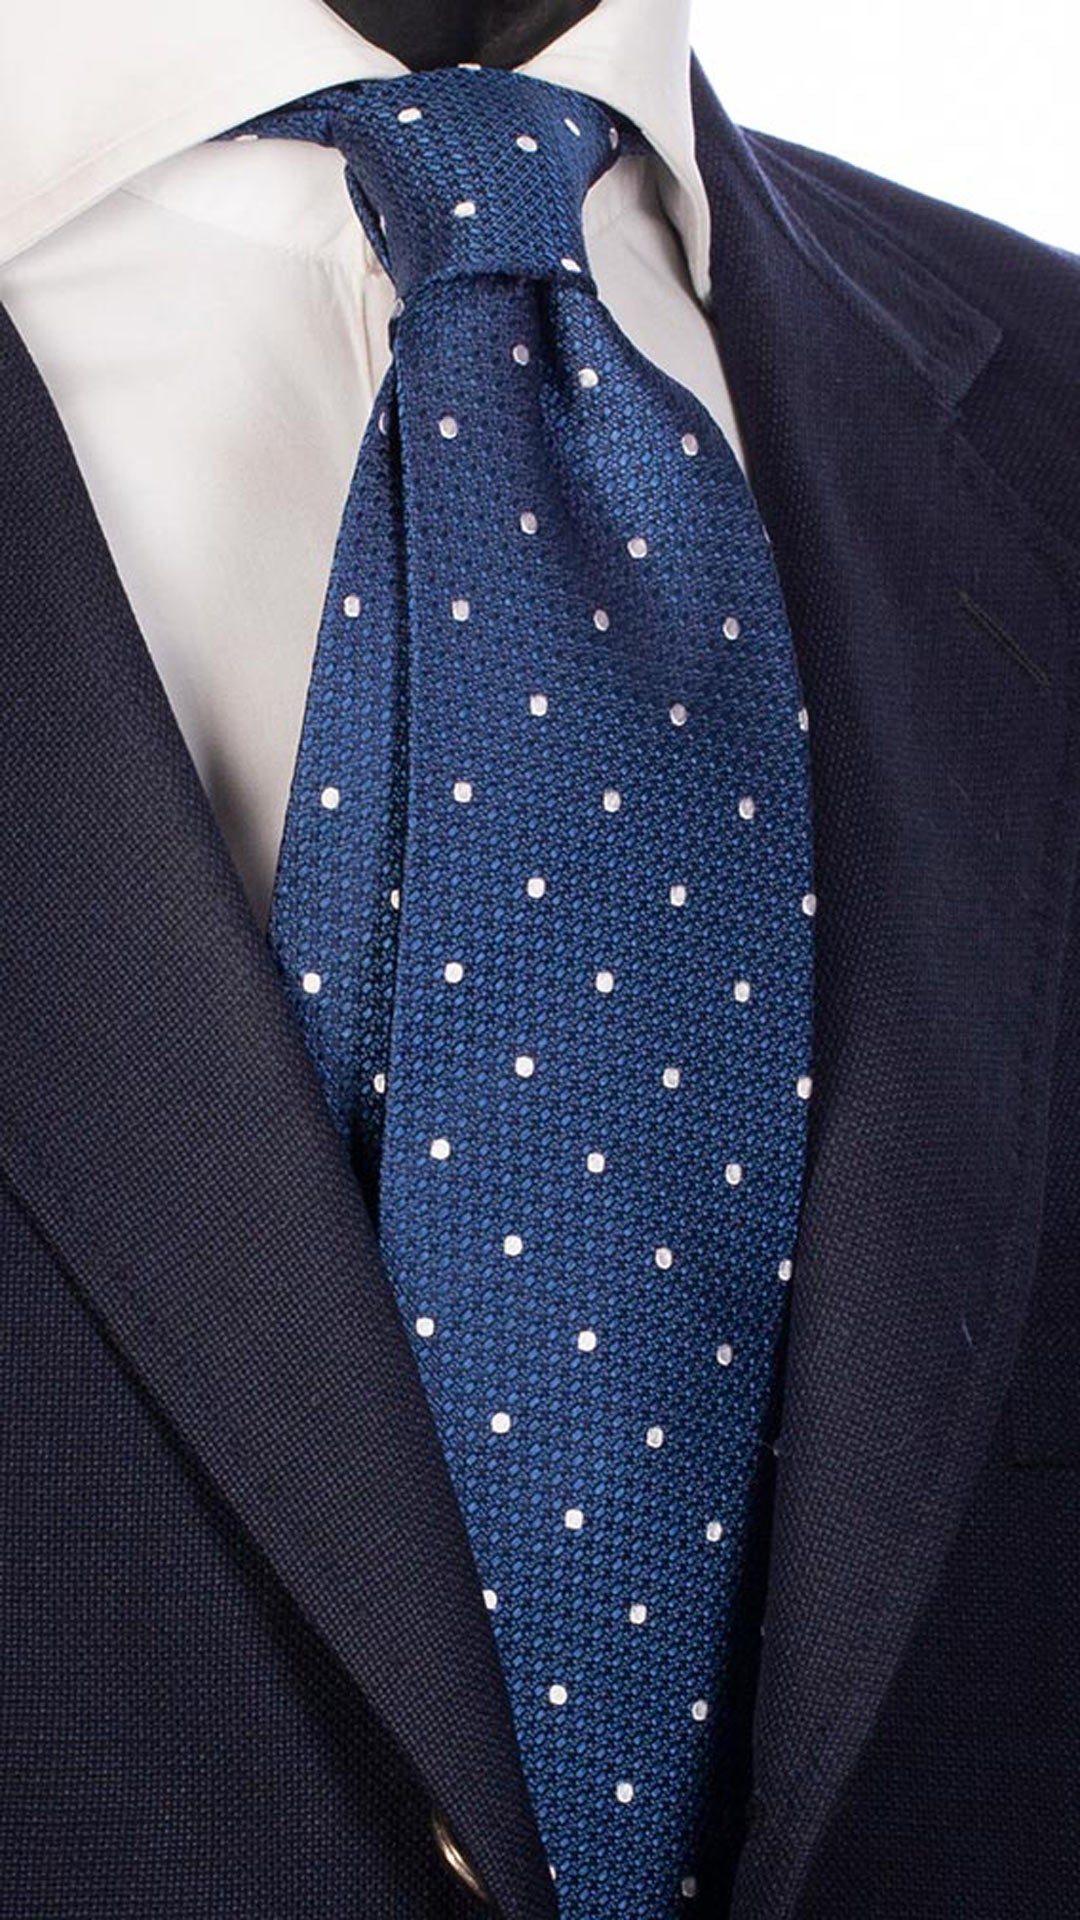 Cravatta da Cerimonia di Seta Blu Navy Fantasia Tono su Tono a Pois Bianchi CY4686 Made in Italy Graffeo Cravatte